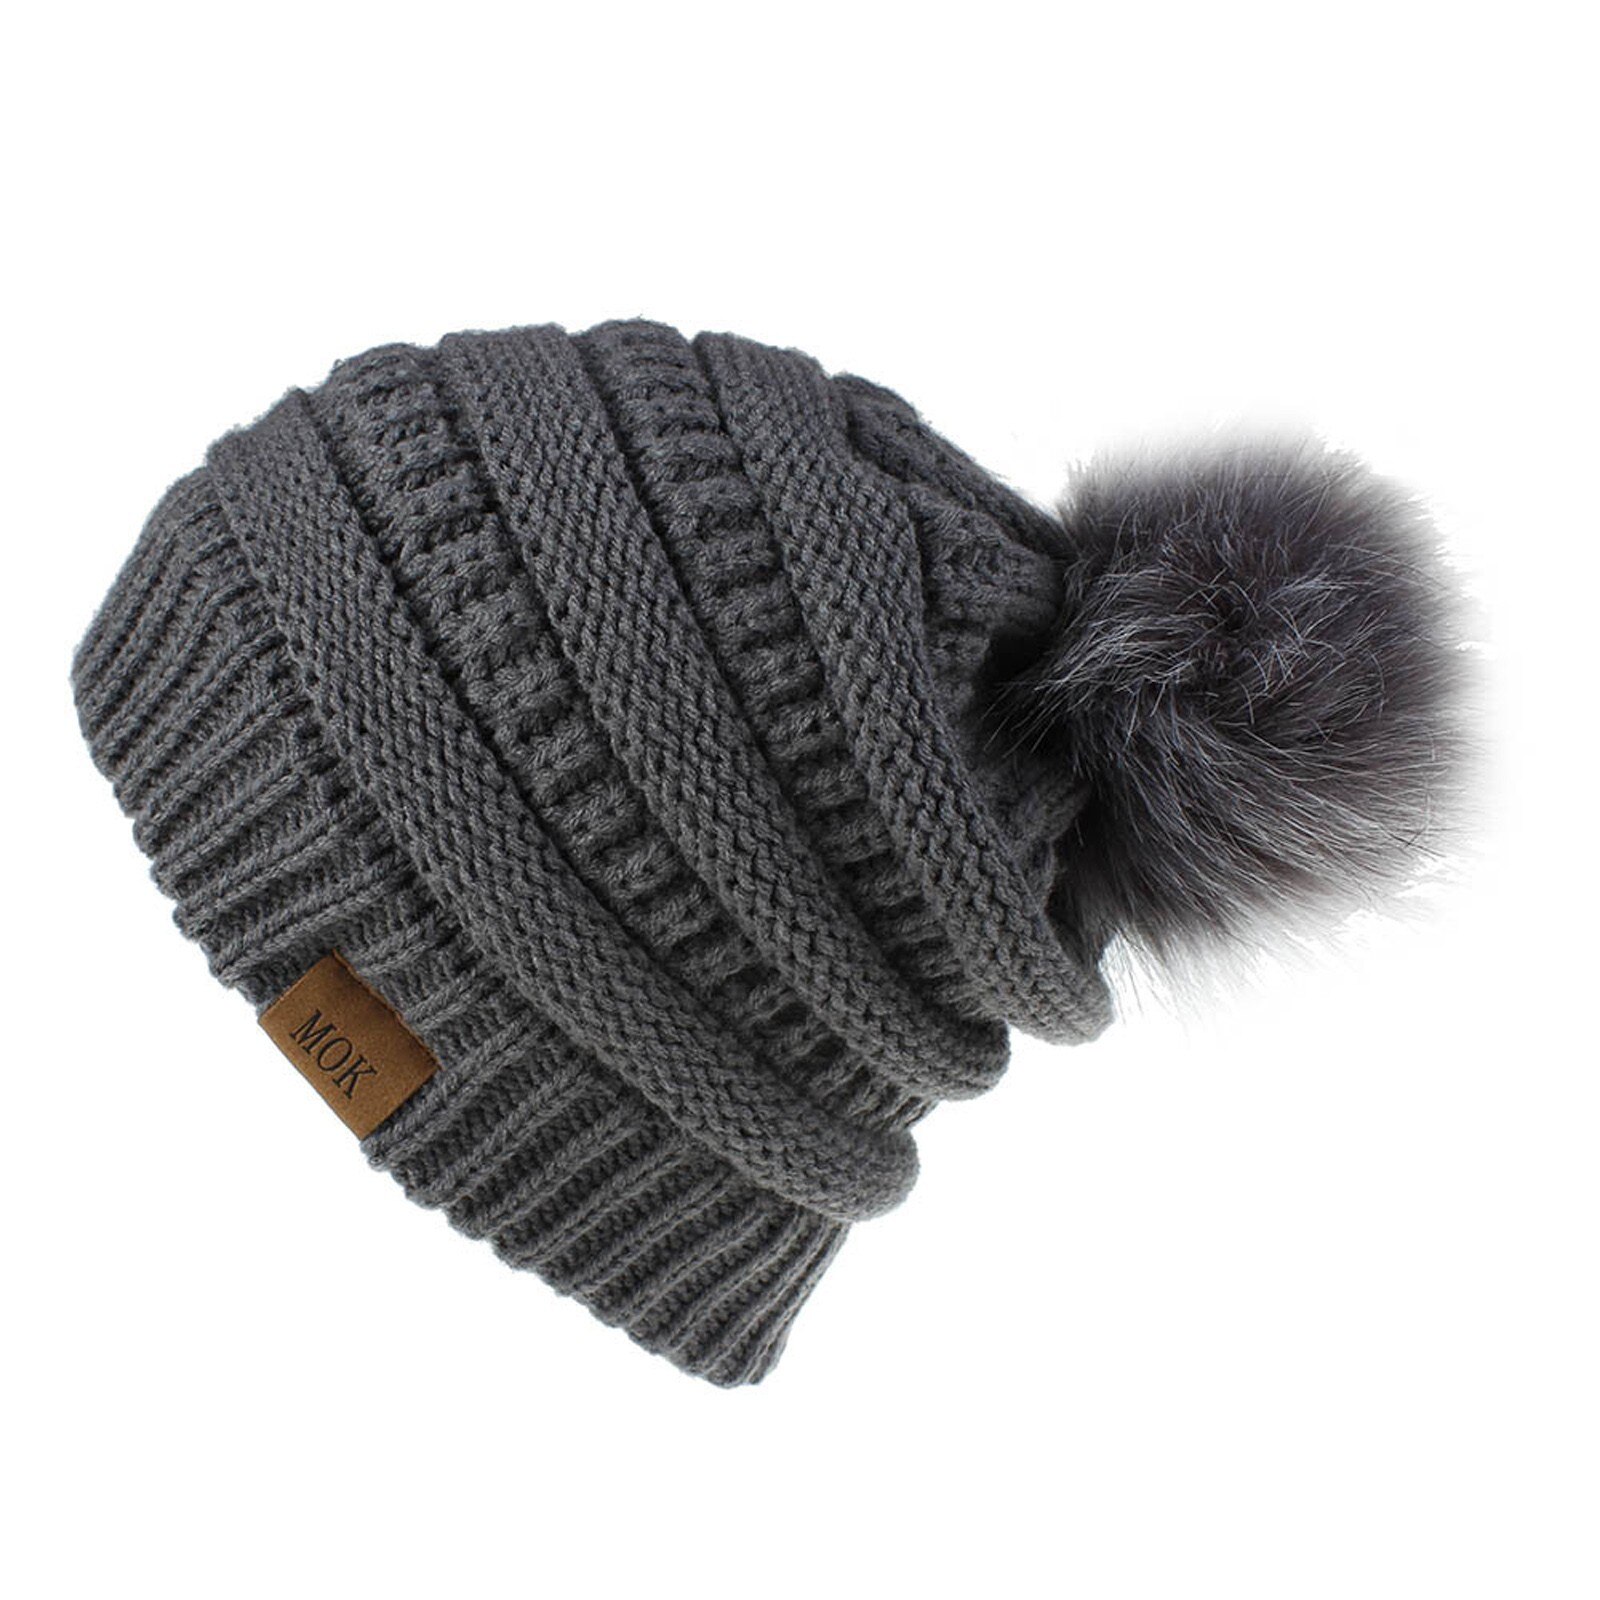 E la moda donna nuova E di alta qualità mantiene caldi cappelli invernali cappello a orlo in lana lavorato a maglia morbido delicato sulla pelle, traspirante: DY